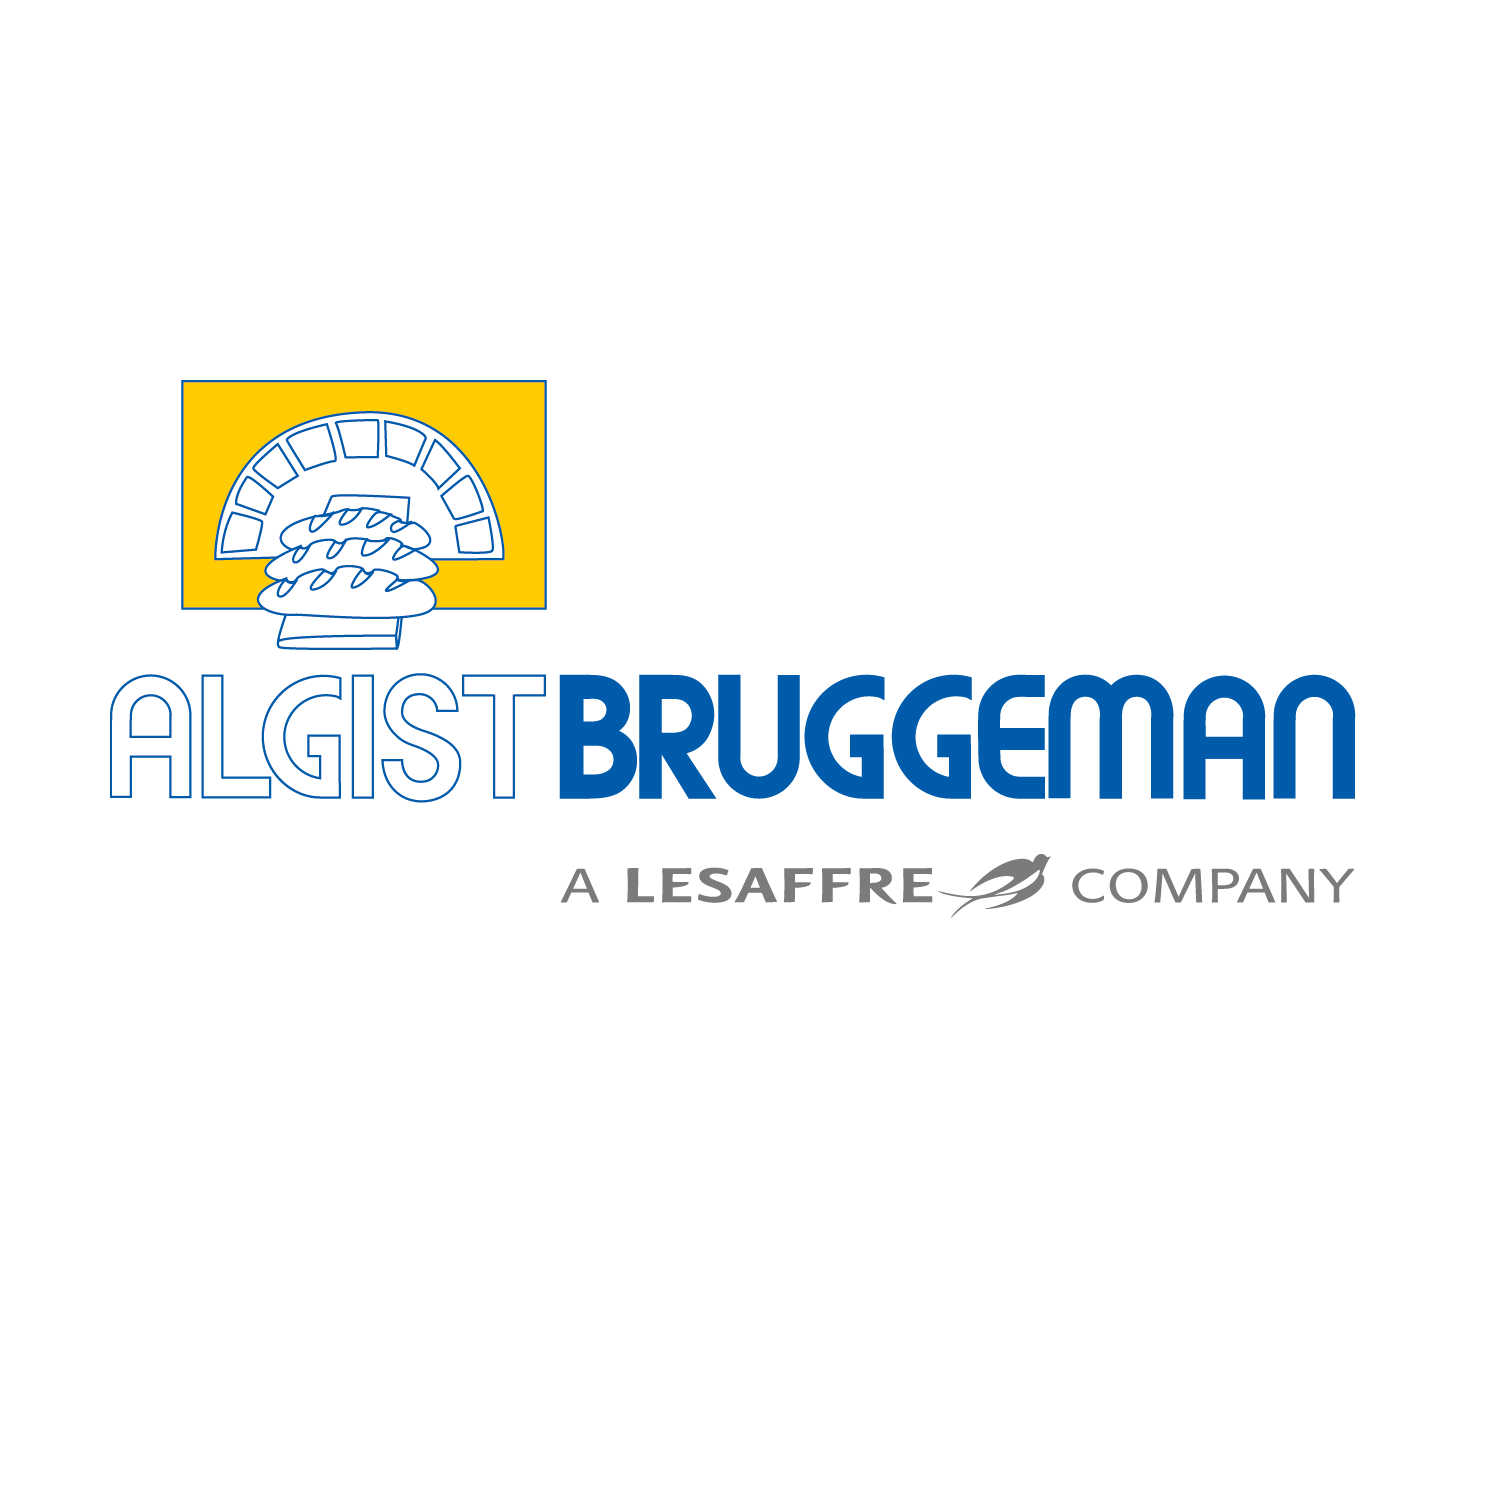 ALG-001634_logo_Algist_Bruggeman.png